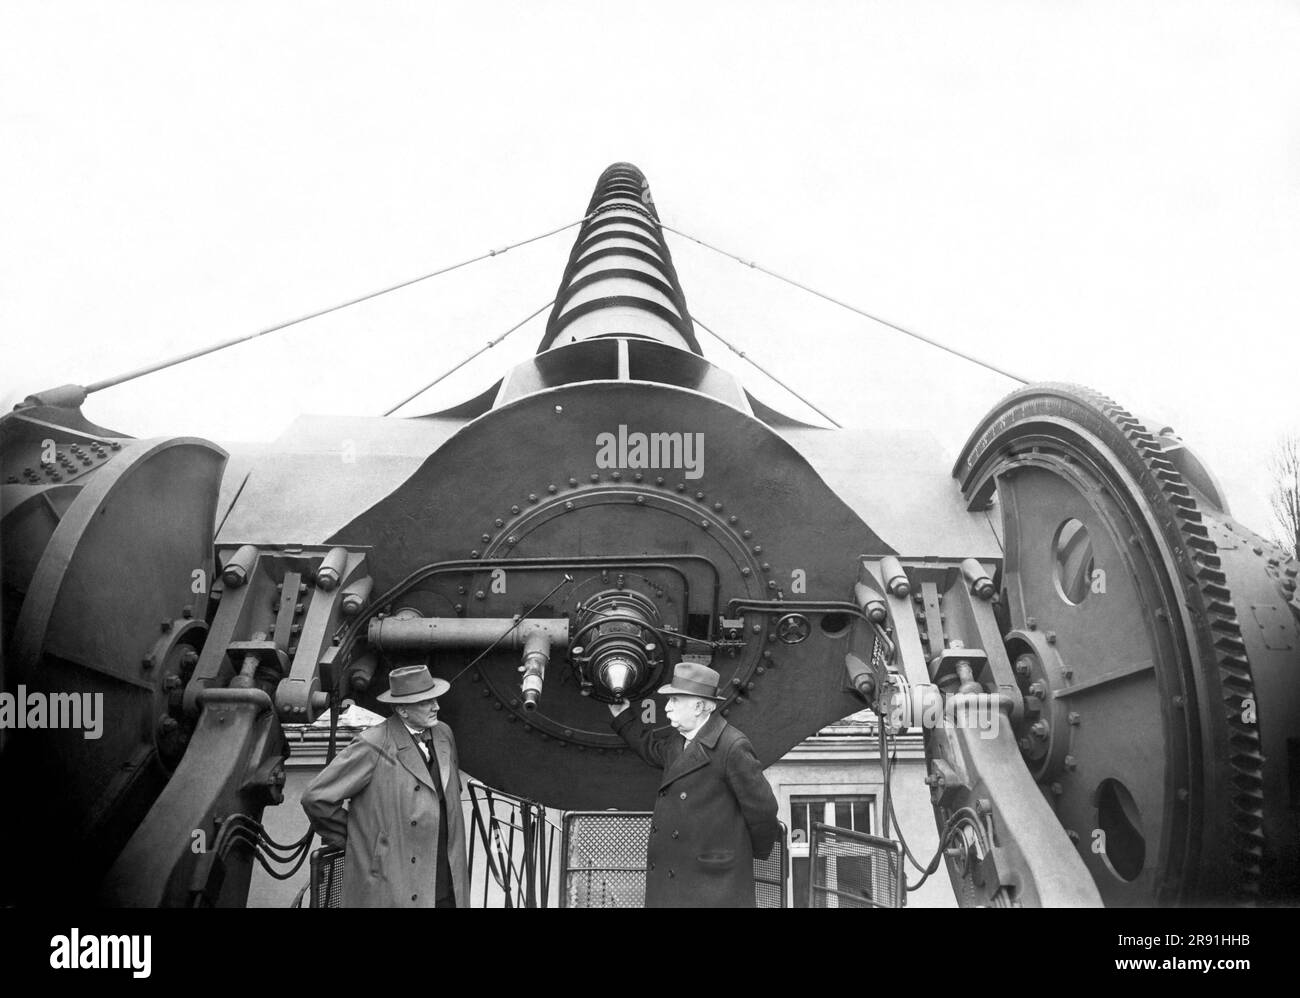 Berlin, Deutschland: c. 1914 das riesige Treptow-Teleskop am Archenhold-Observatorium in Berlin. Es ist 21 Meter lang und das längste bewegliche Refraktionsteleskop der Welt. Stockfoto